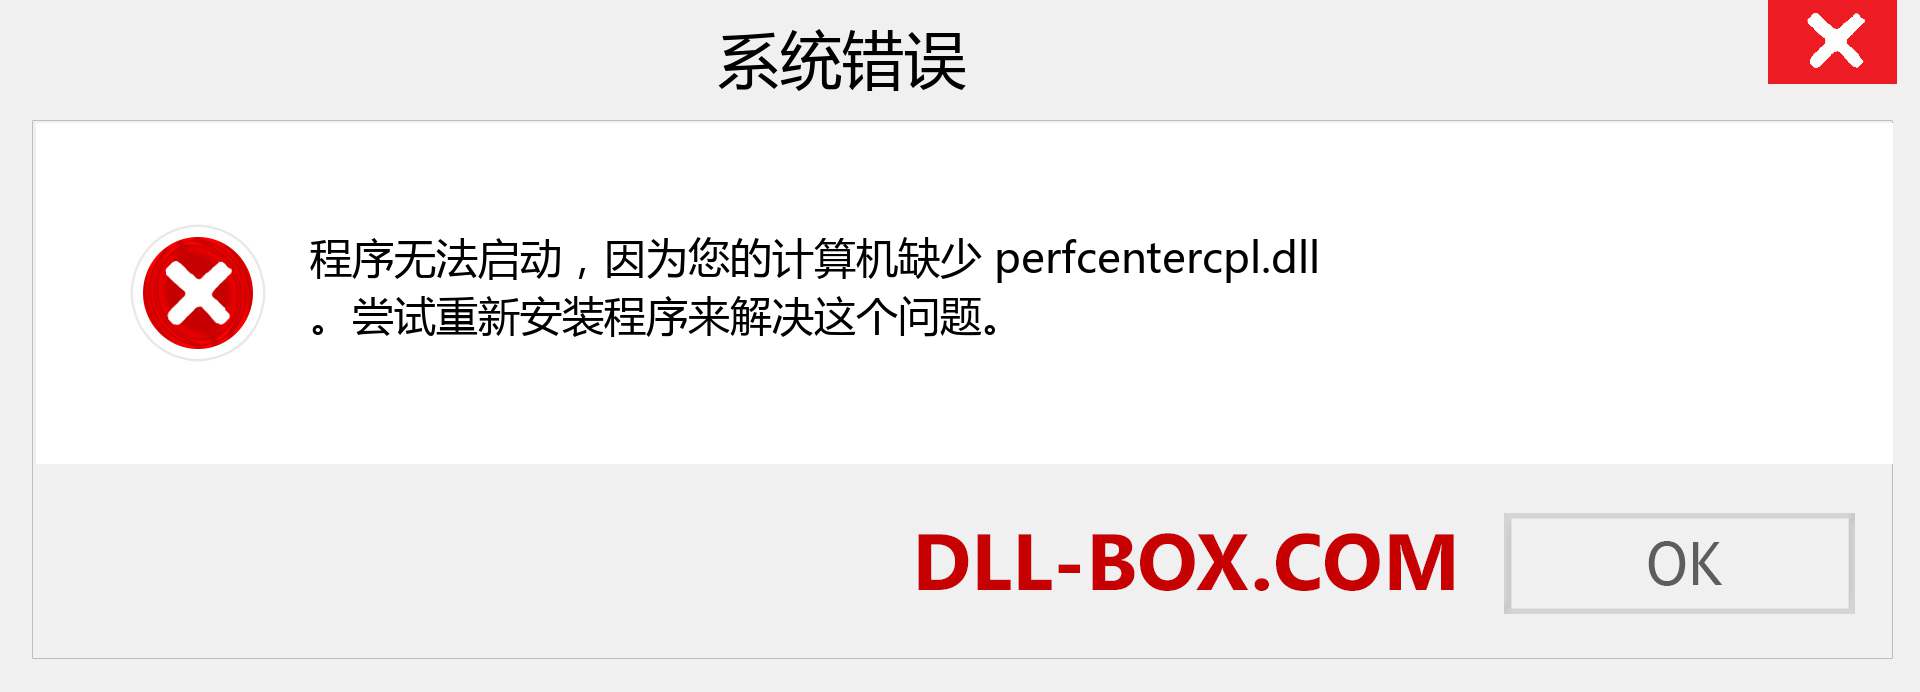 perfcentercpl.dll 文件丢失？。 适用于 Windows 7、8、10 的下载 - 修复 Windows、照片、图像上的 perfcentercpl dll 丢失错误